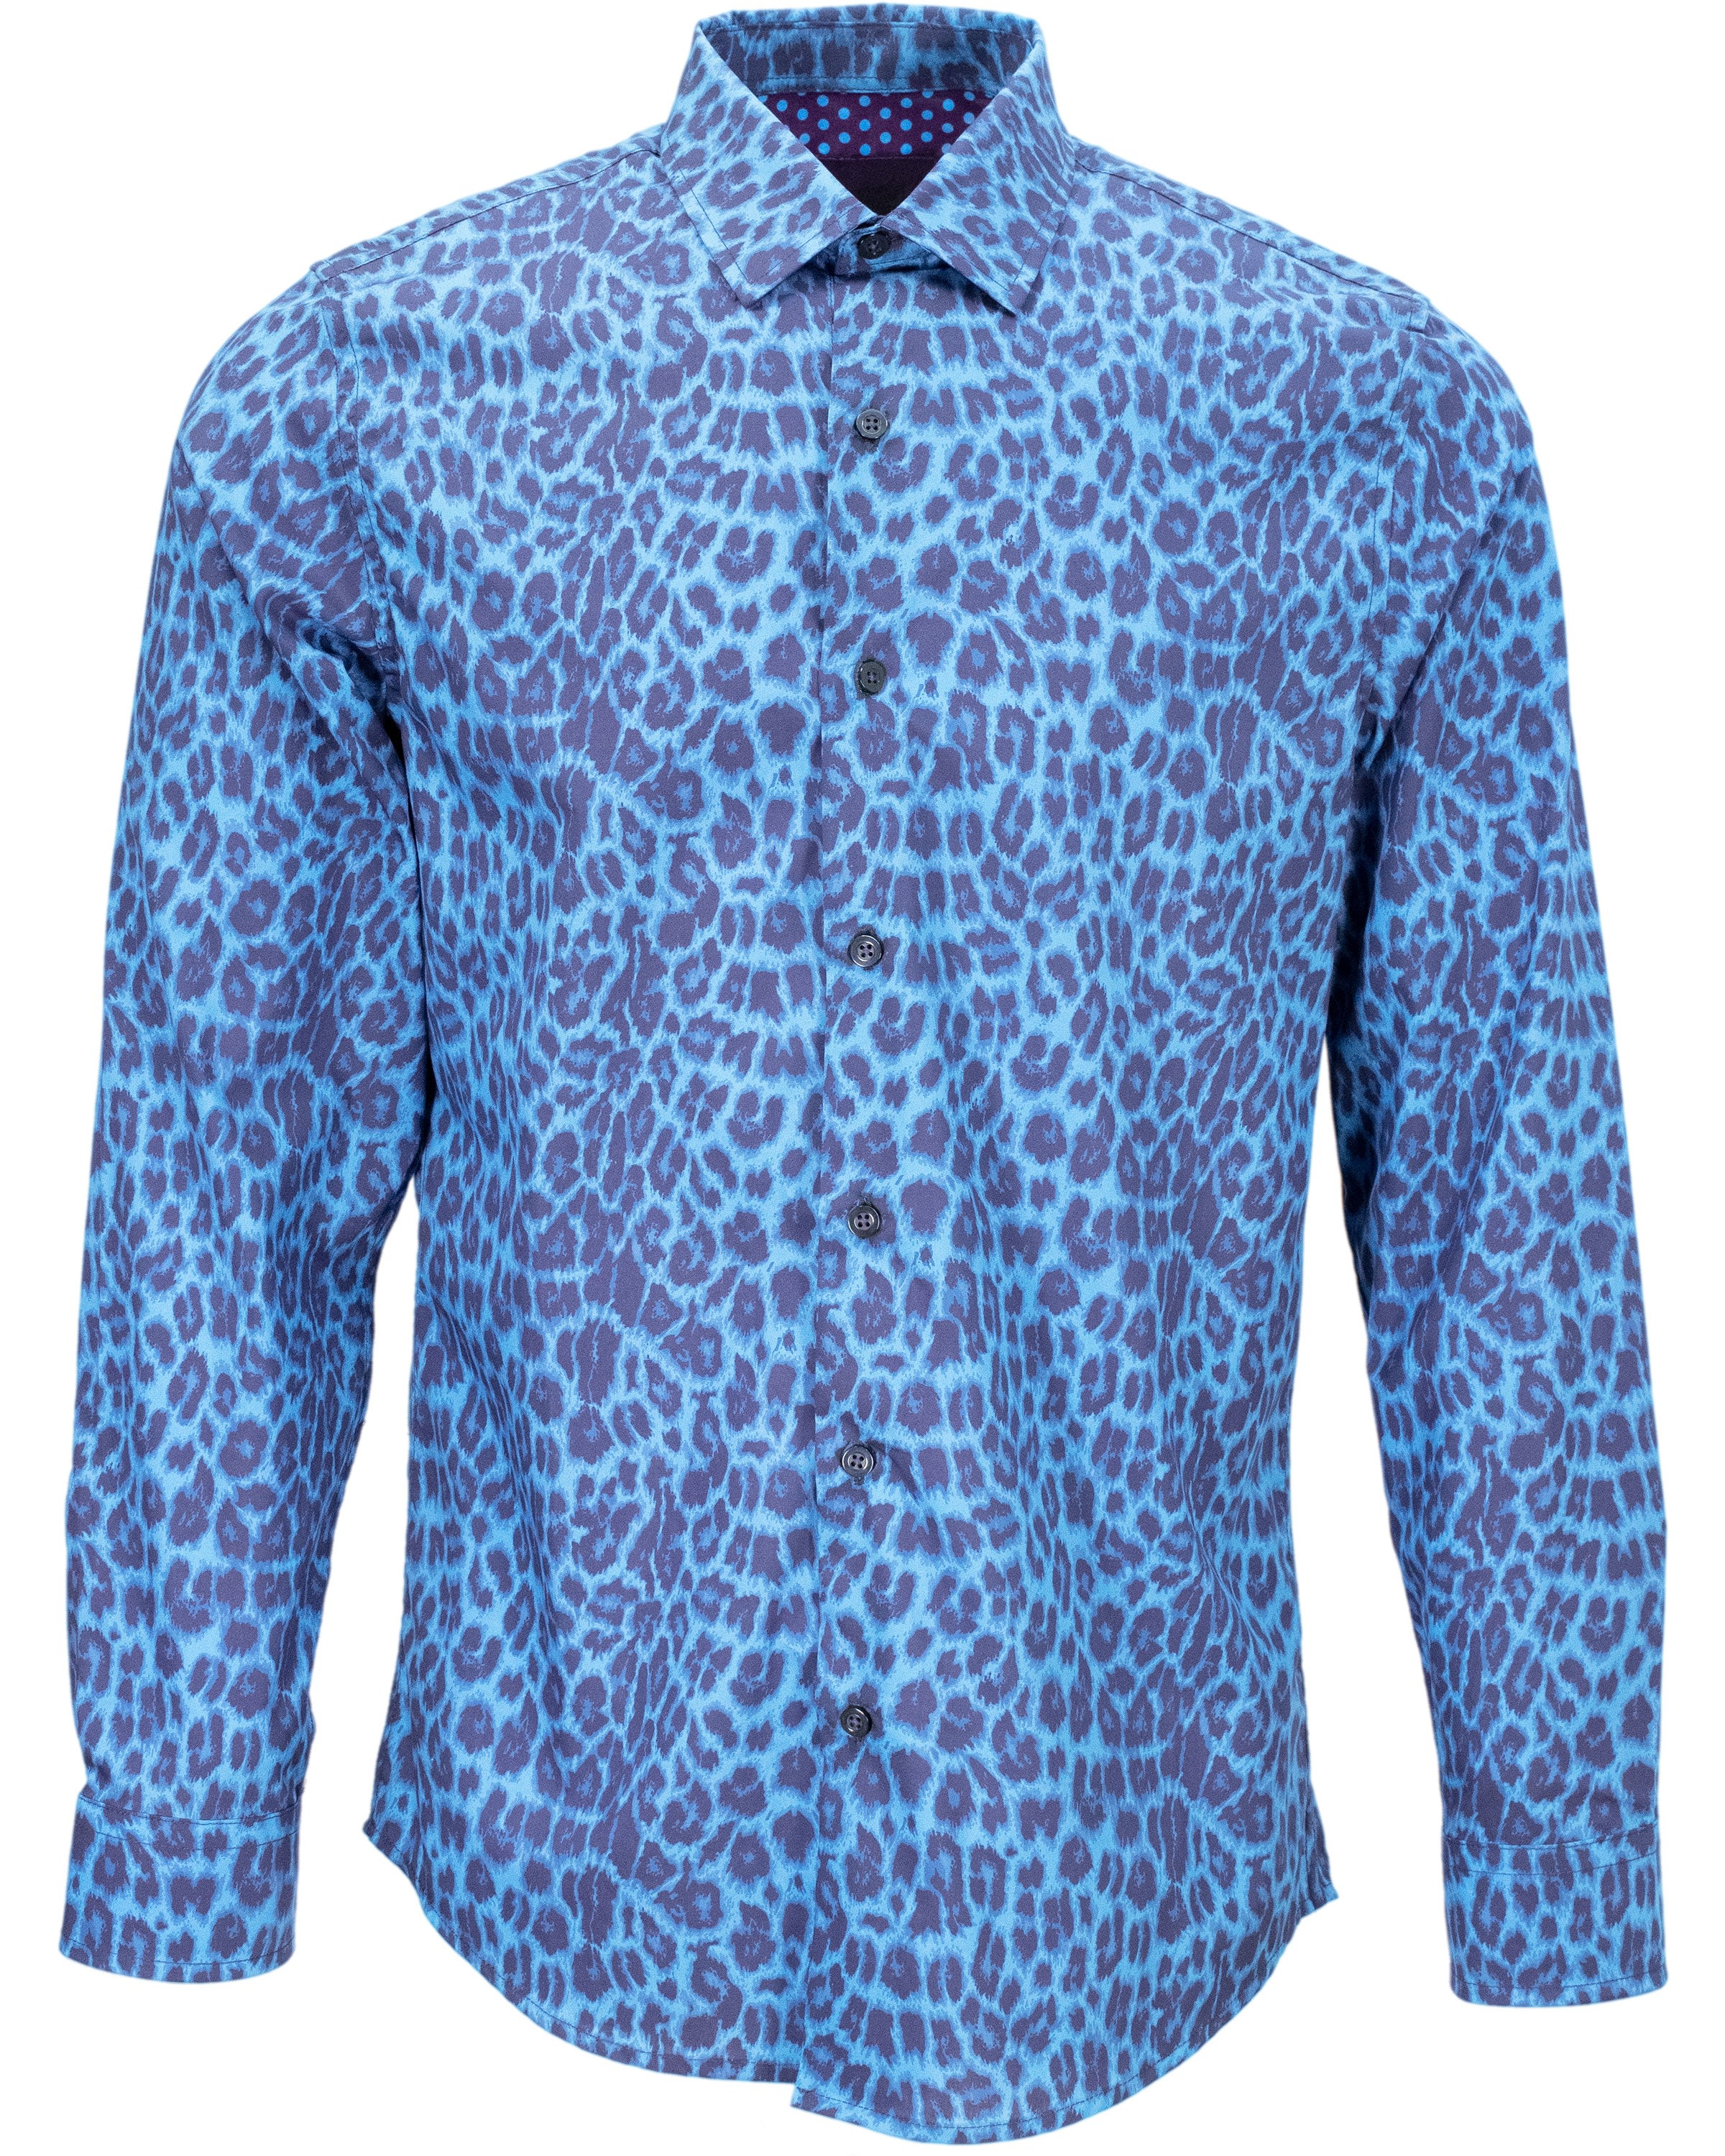 Men’s Blue Norman Leopard Shirt - Sapphire Medium Lords of Harlech